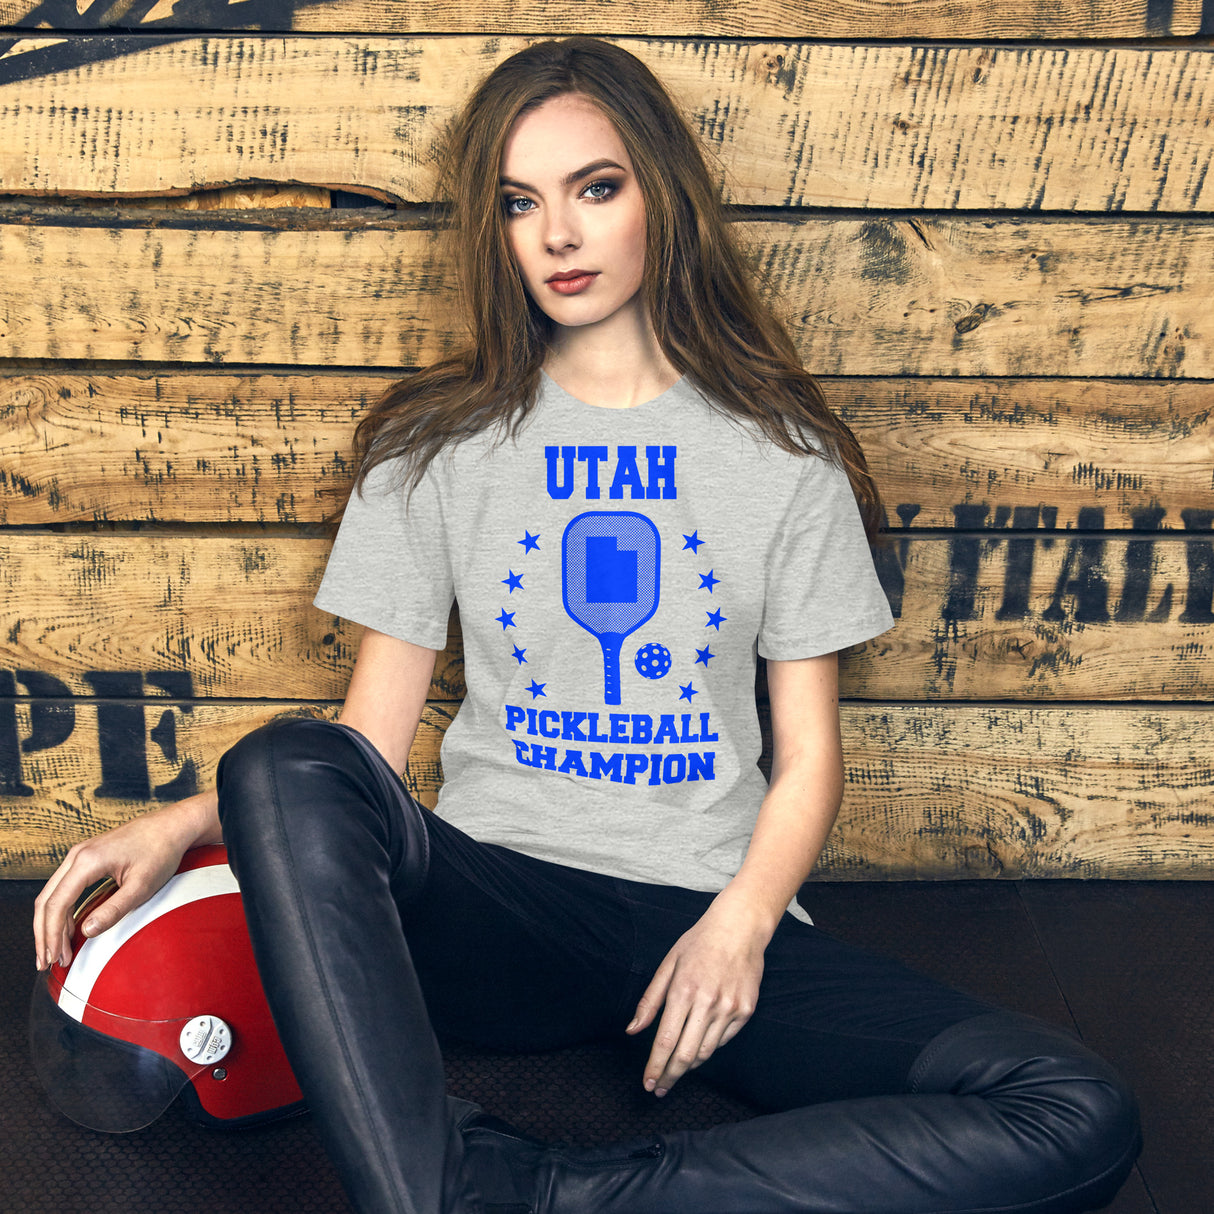 Utah Pickleball Champion Women's Shirt